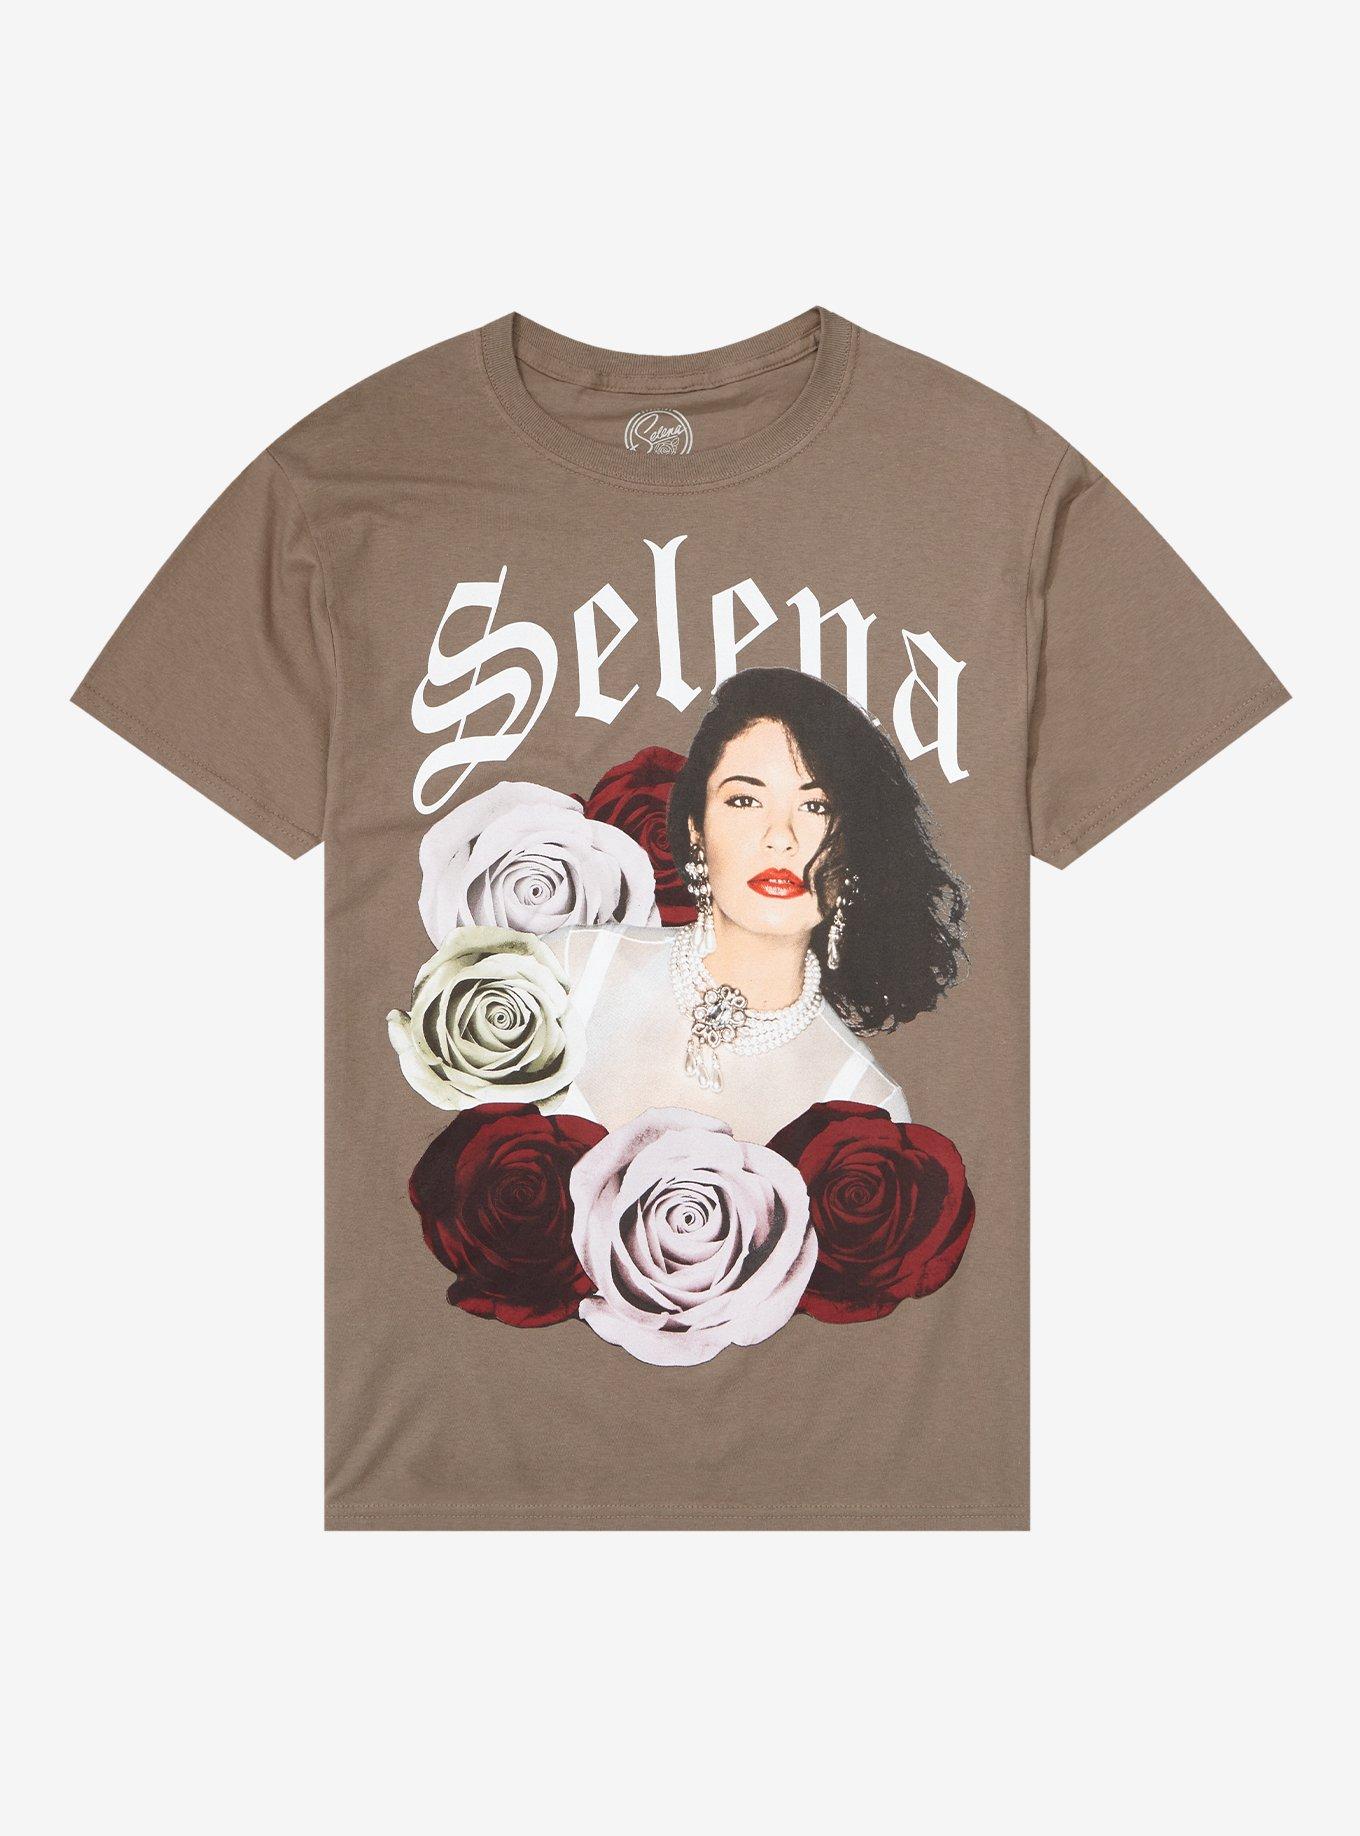 Selena Quintanilla T-Shirt